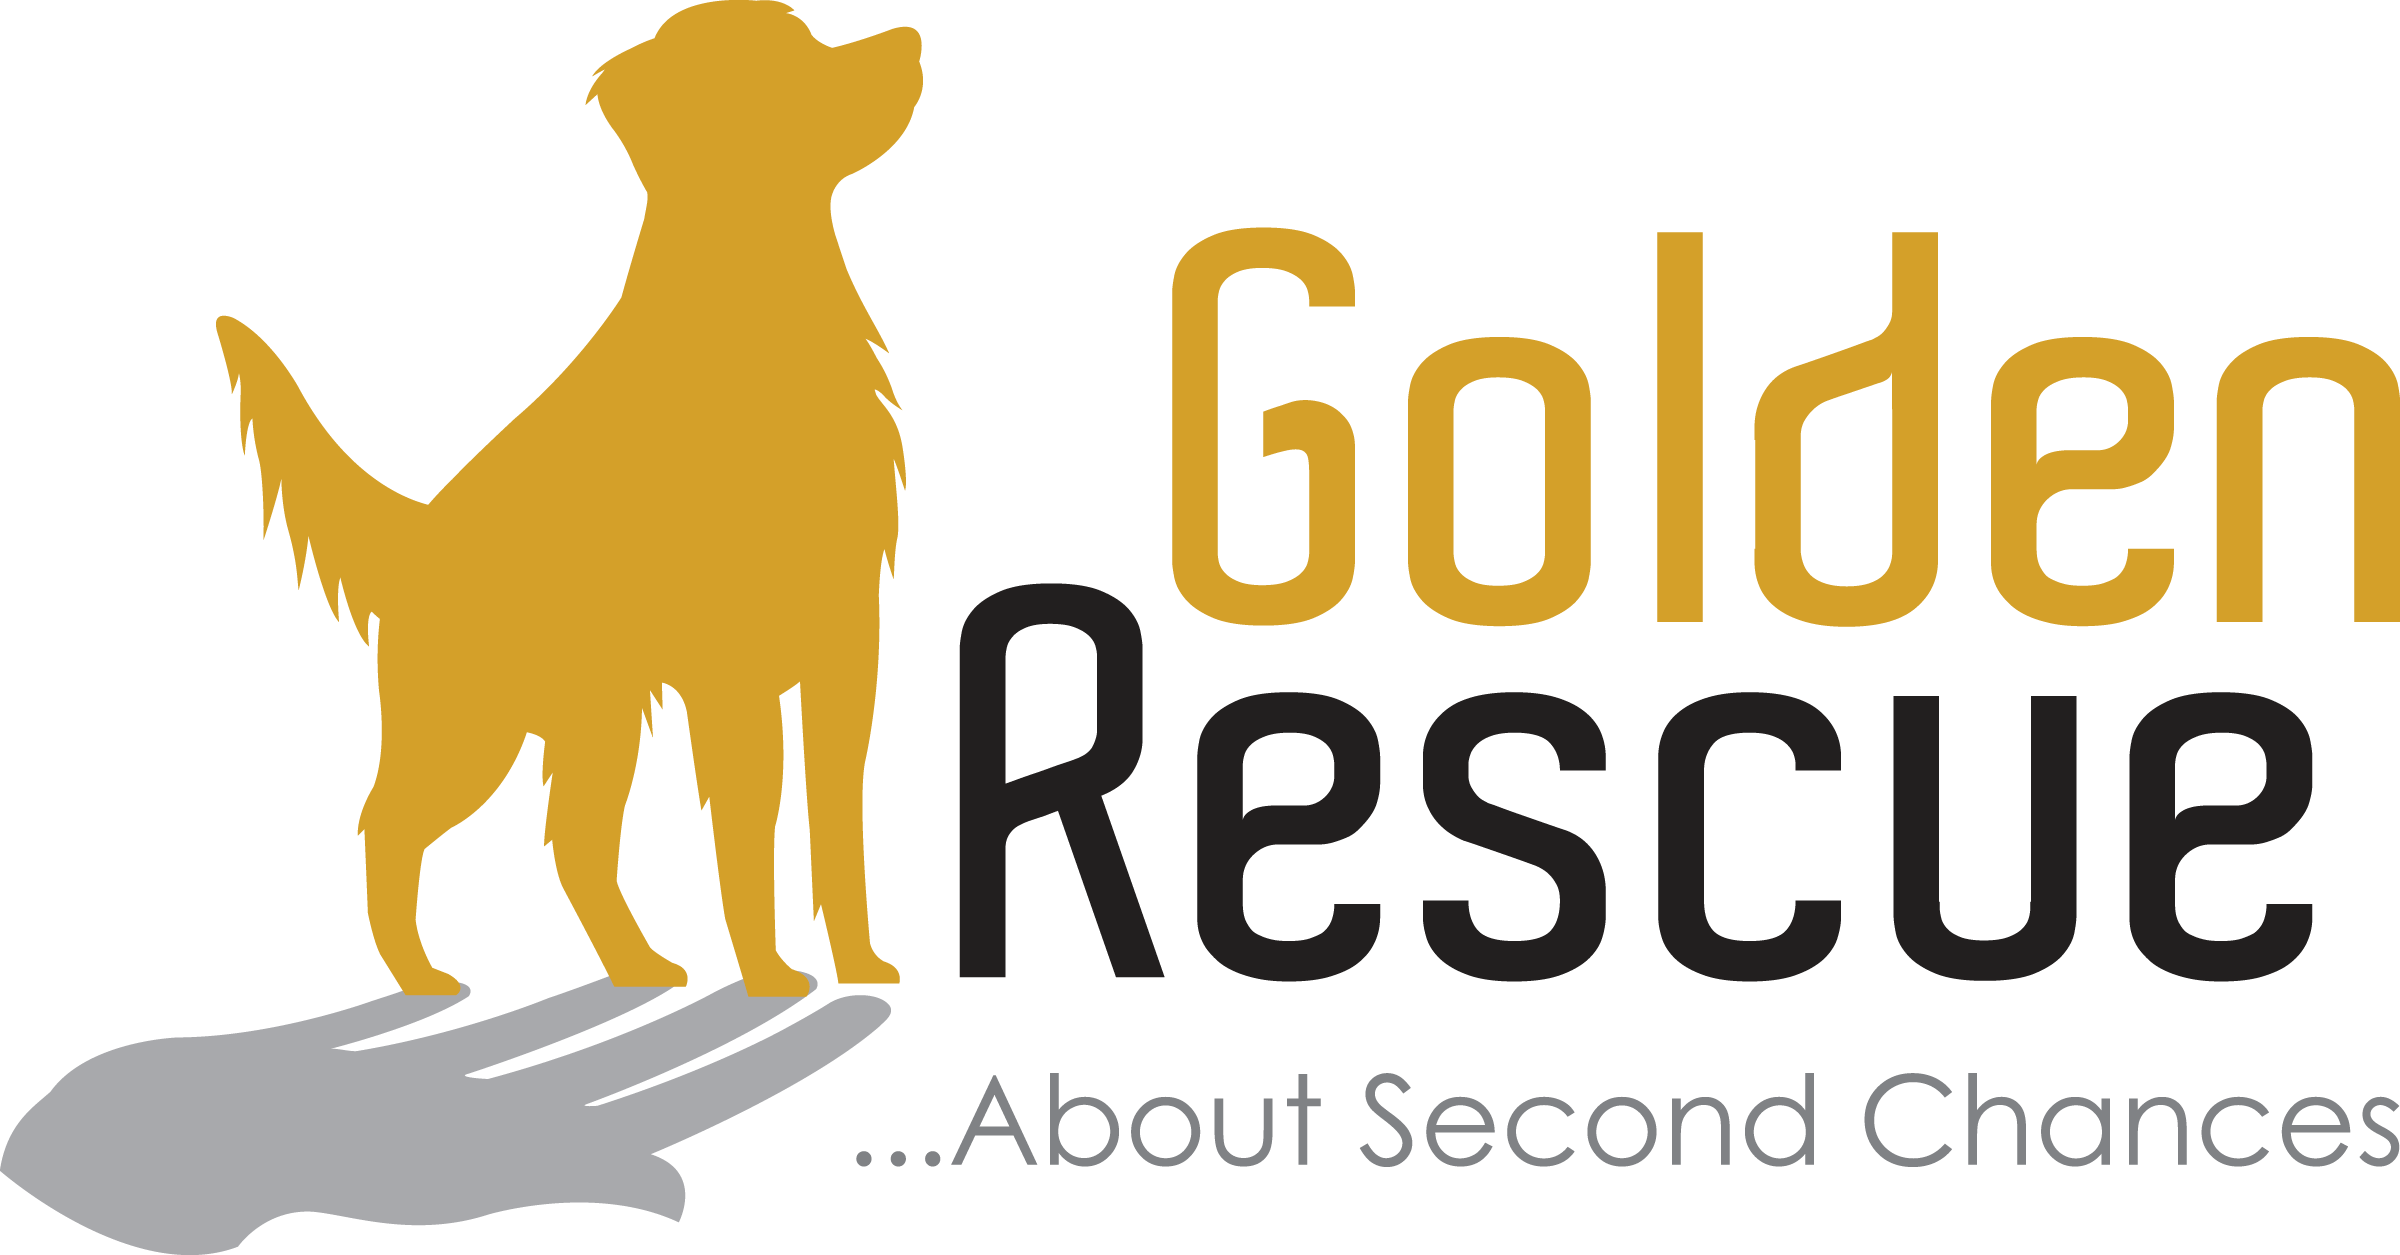 Golden Rescue - About Second Chances